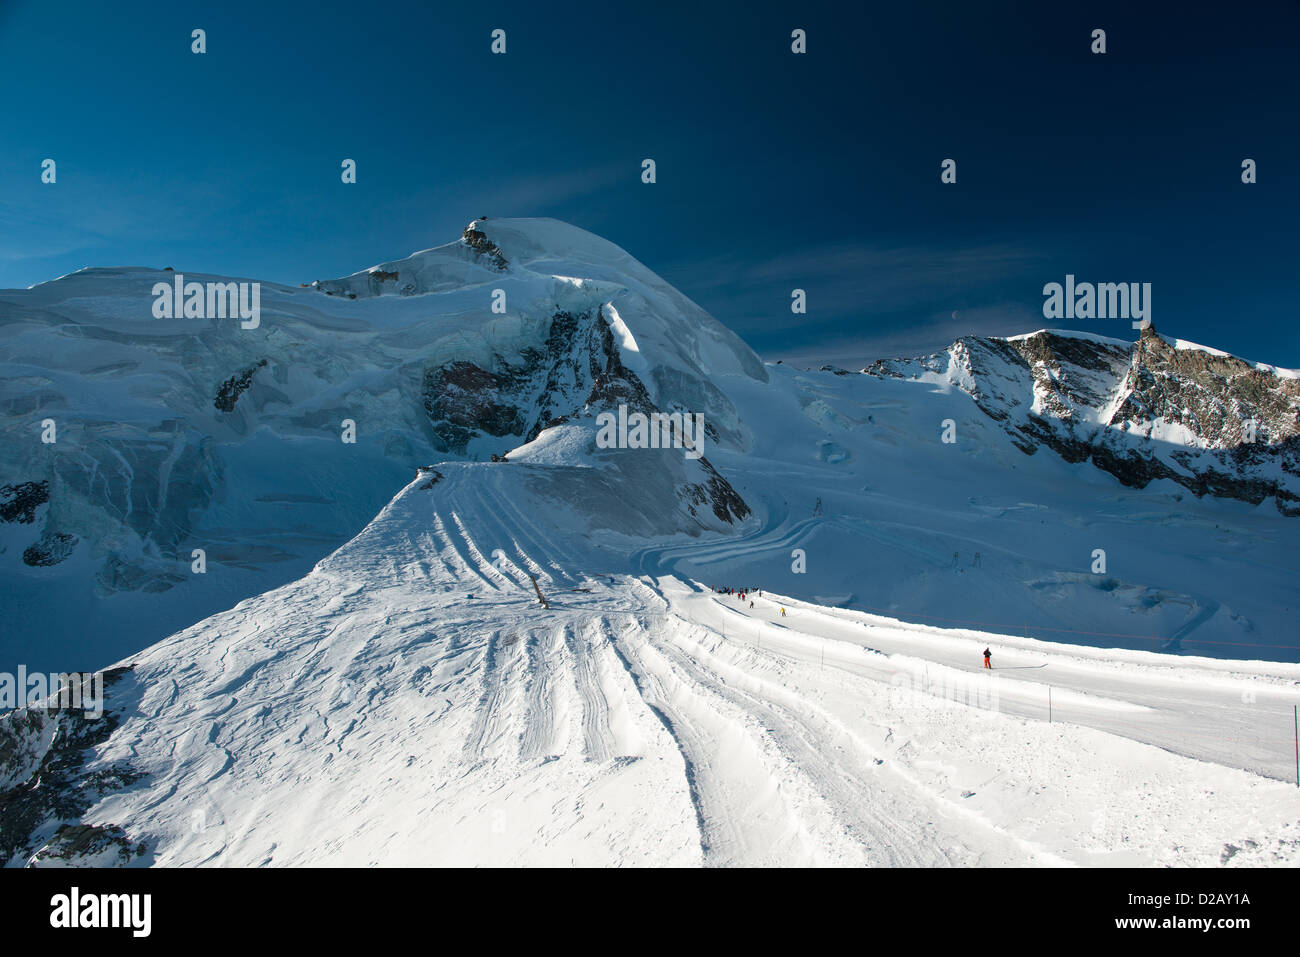 Allalinhorn mountain peak, view from Mittelallalin, Saas Fee, Valais, Switzerland Stock Photo